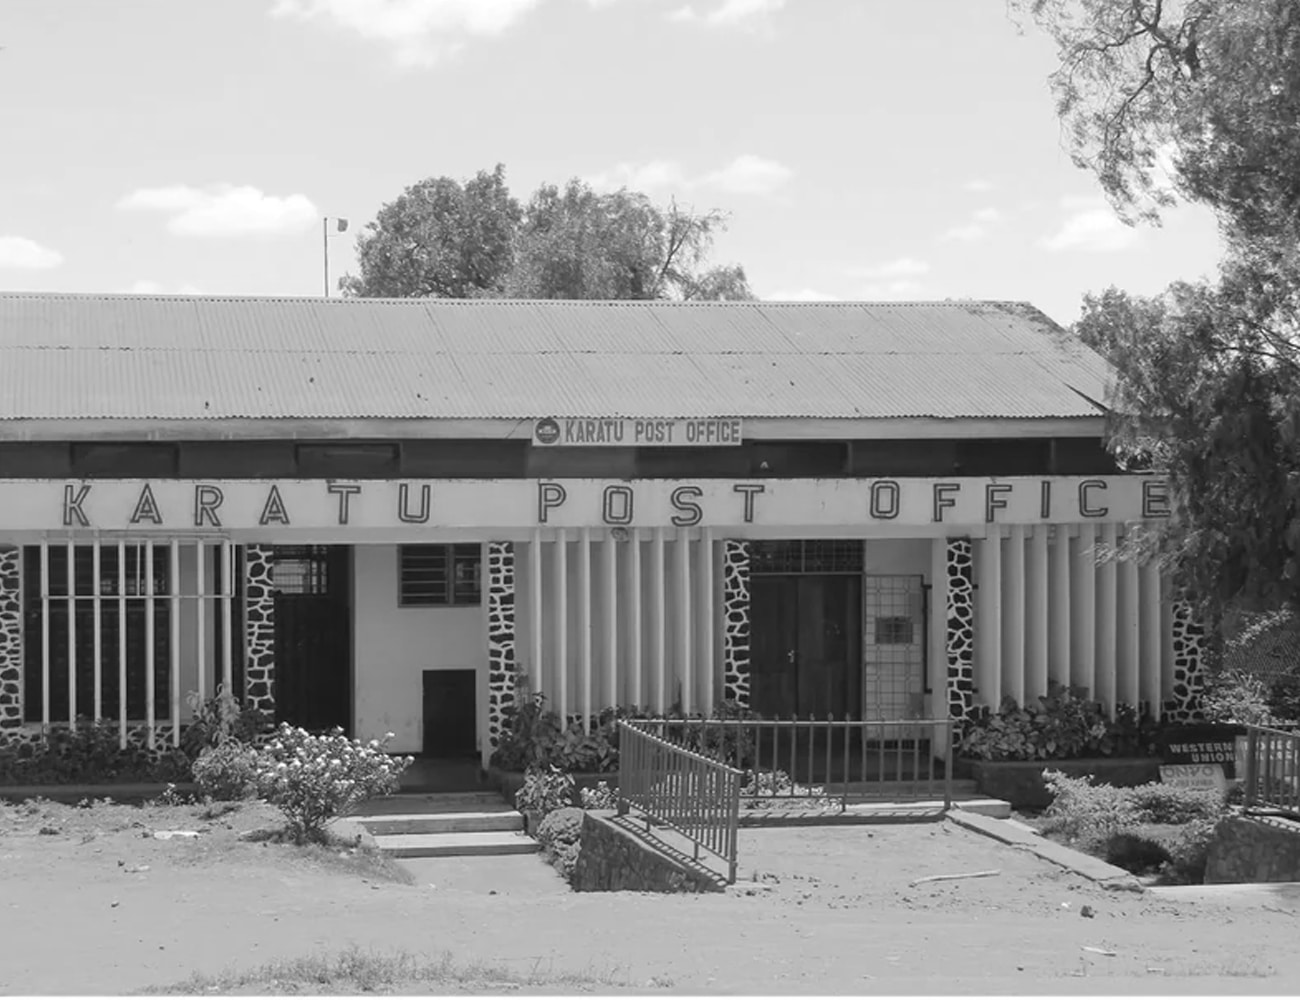 Karutu Post Office in Tanzania